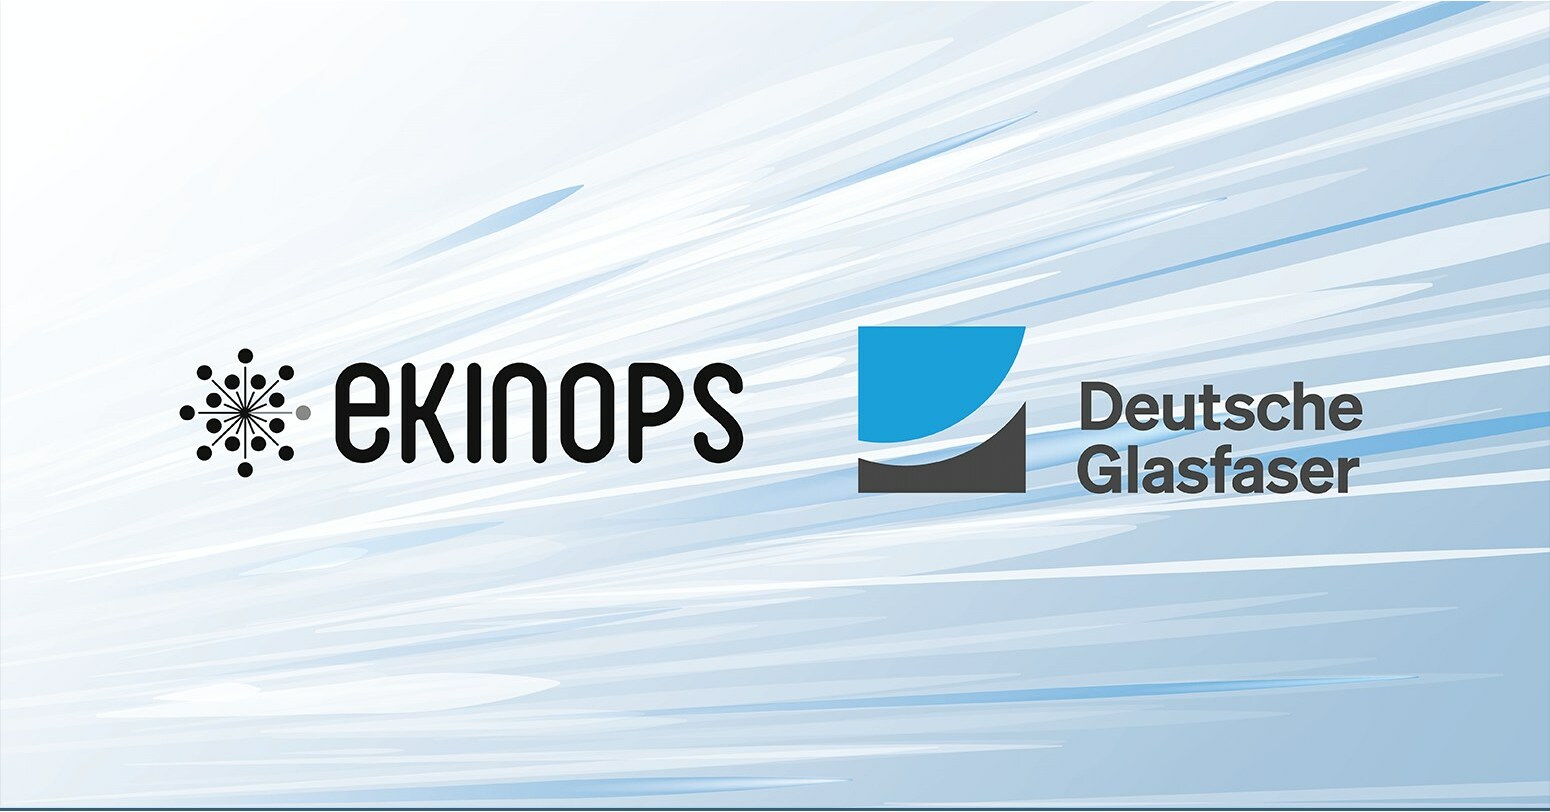 Deutsche Glasfaser Modernizes Its Network, Speeds Service